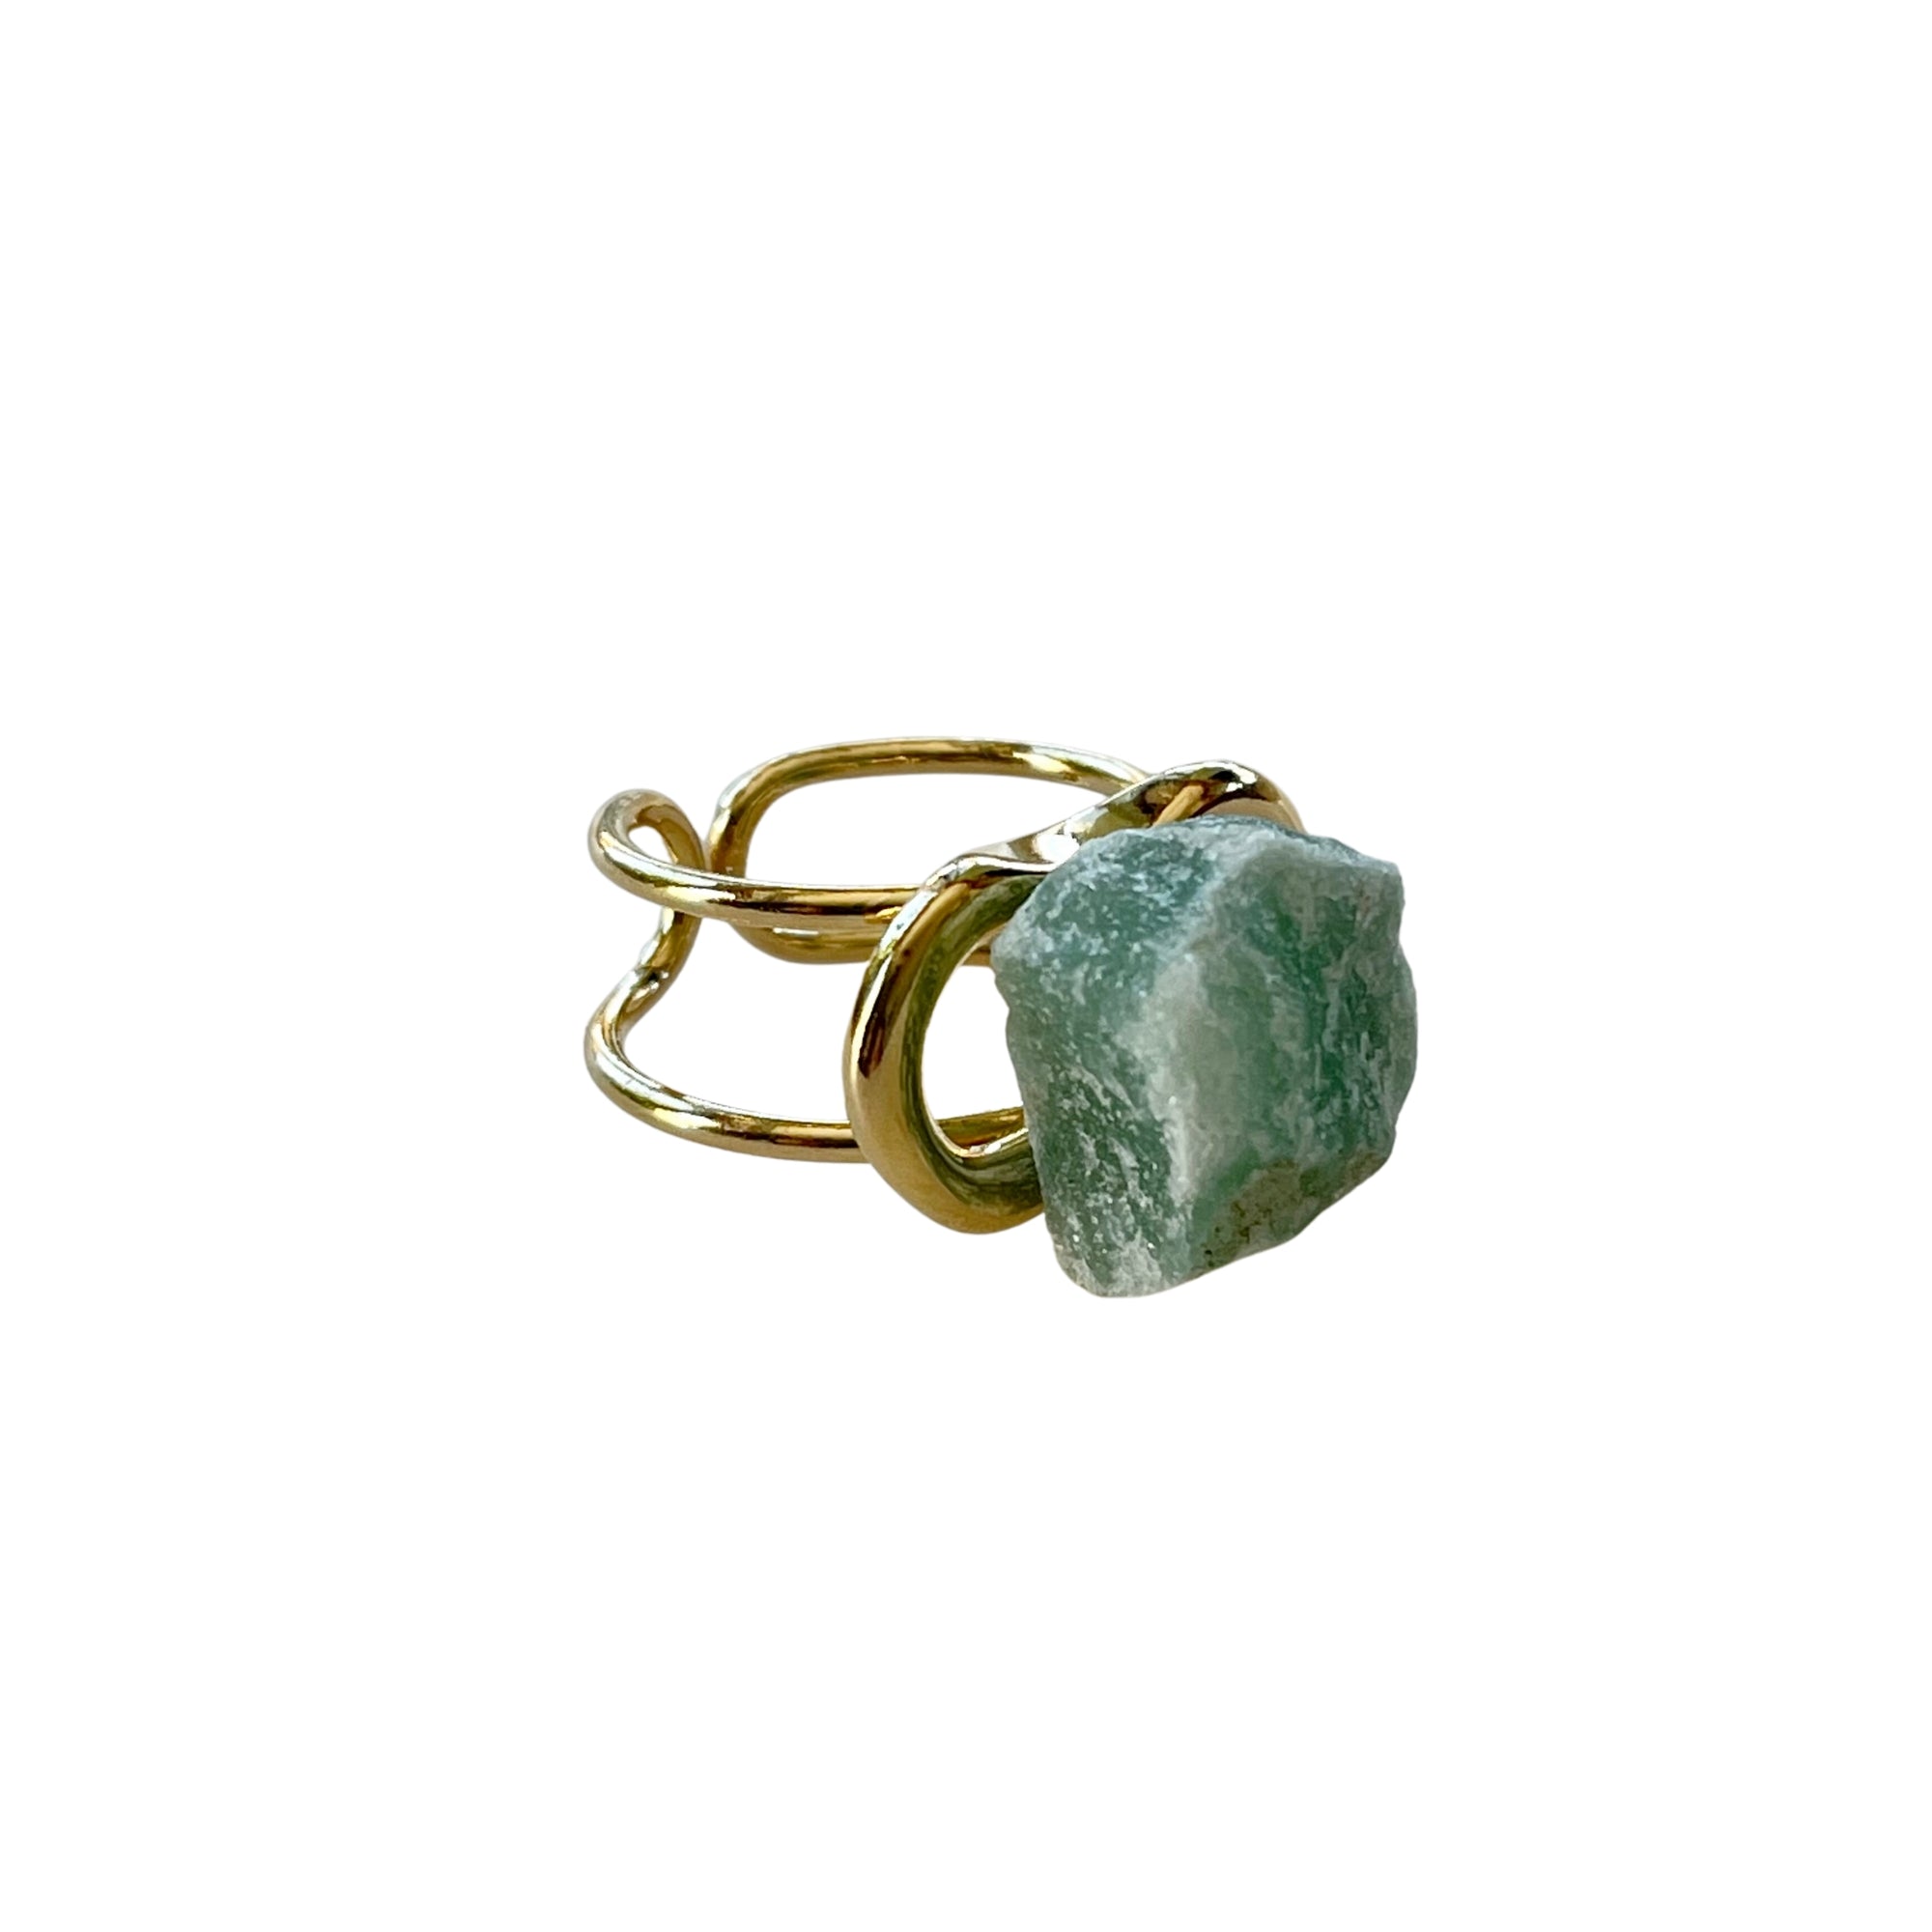 Der Ring "ÉRIKA", vergoldet mit 18 K grünem Quarz, ist ein unverwechselbares Stück.  Ein offener Cocktailring in transparentem Design. Verstellbar.  Hergestellt aus hochwertigem 18 K vergoldetem Messing mit Quarz. Perfekt für Frauen, die besondere und einzigartige Stücke zu schätzen wissen